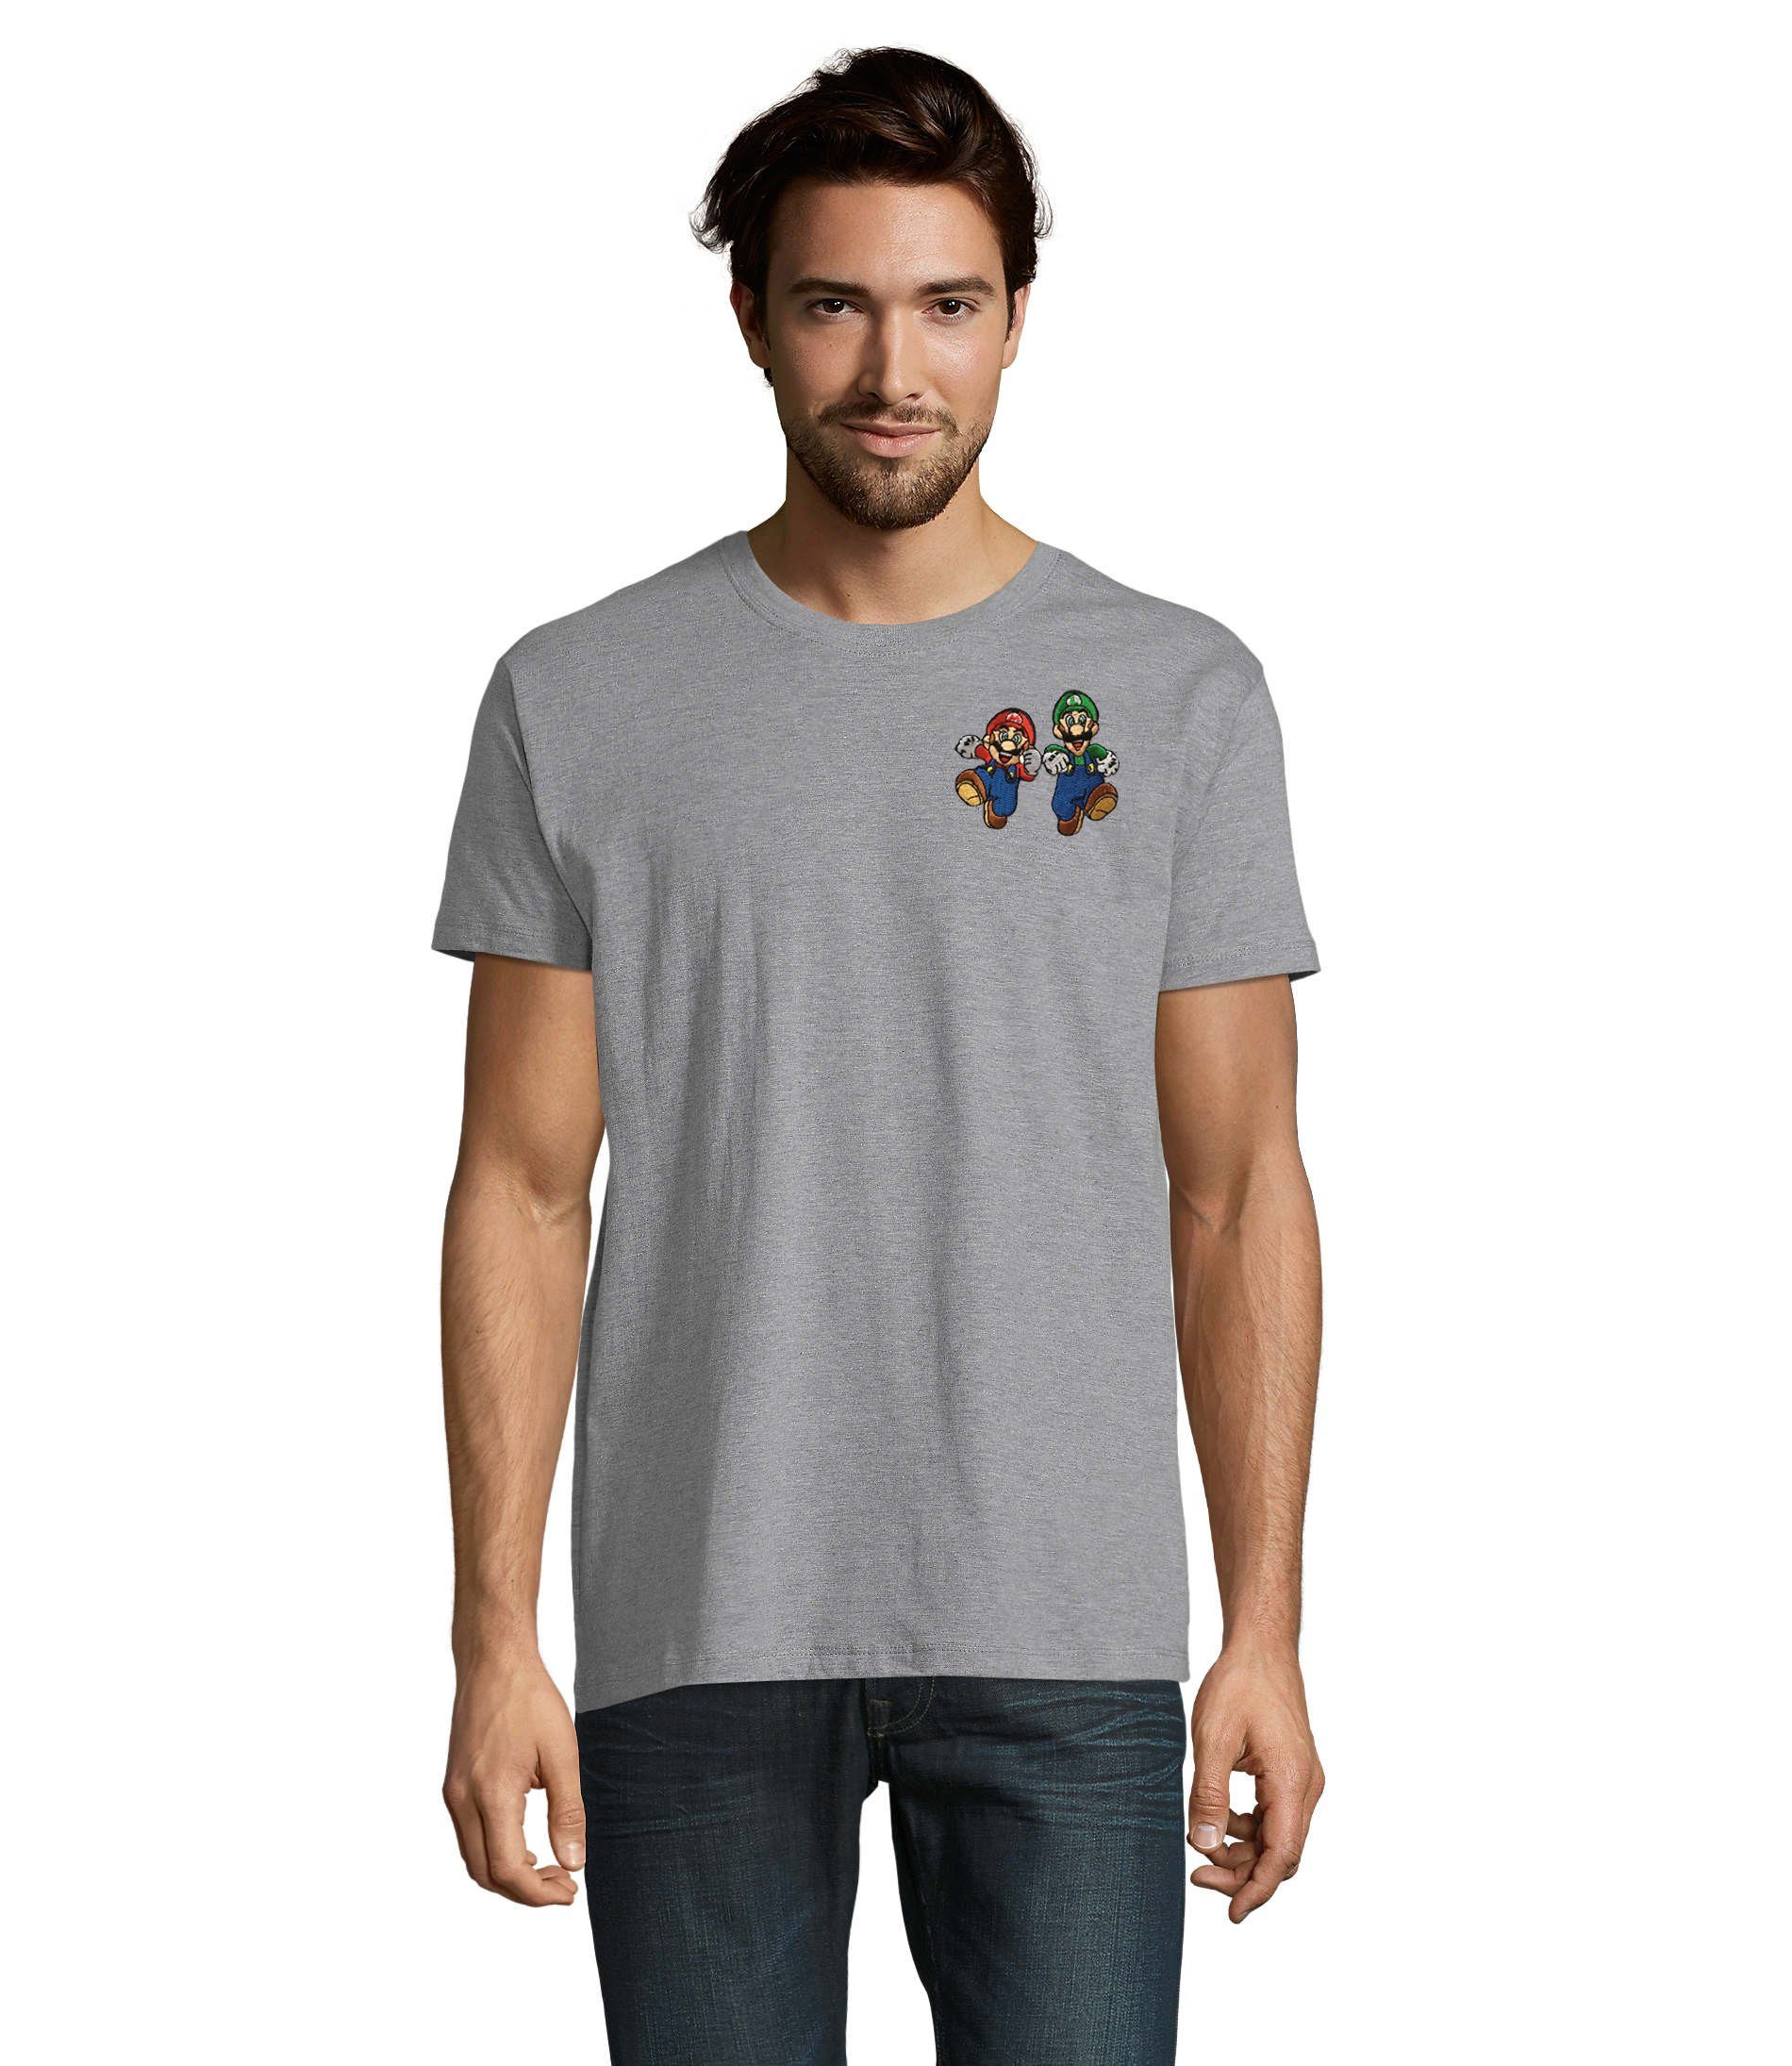 Blondie & Brownie T-Shirt Herren Mario & Luigi Brust Stick Peach Konsole Nintendo Gaming bestickt Grau